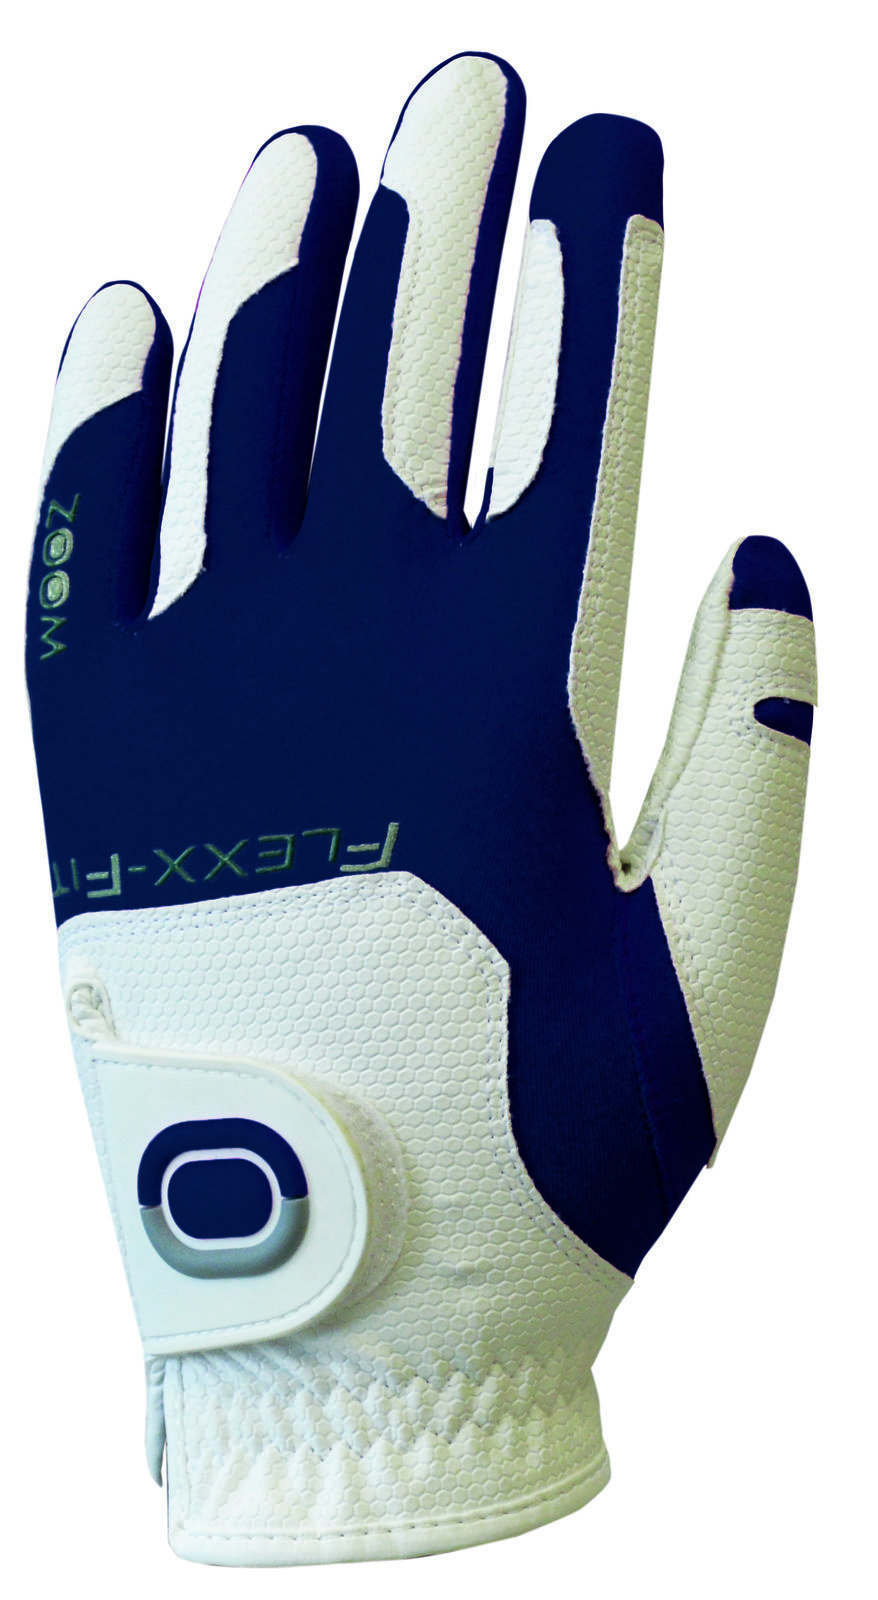 Rukavice Zoom Gloves Weather Mens Golf Glove White/Navy LH